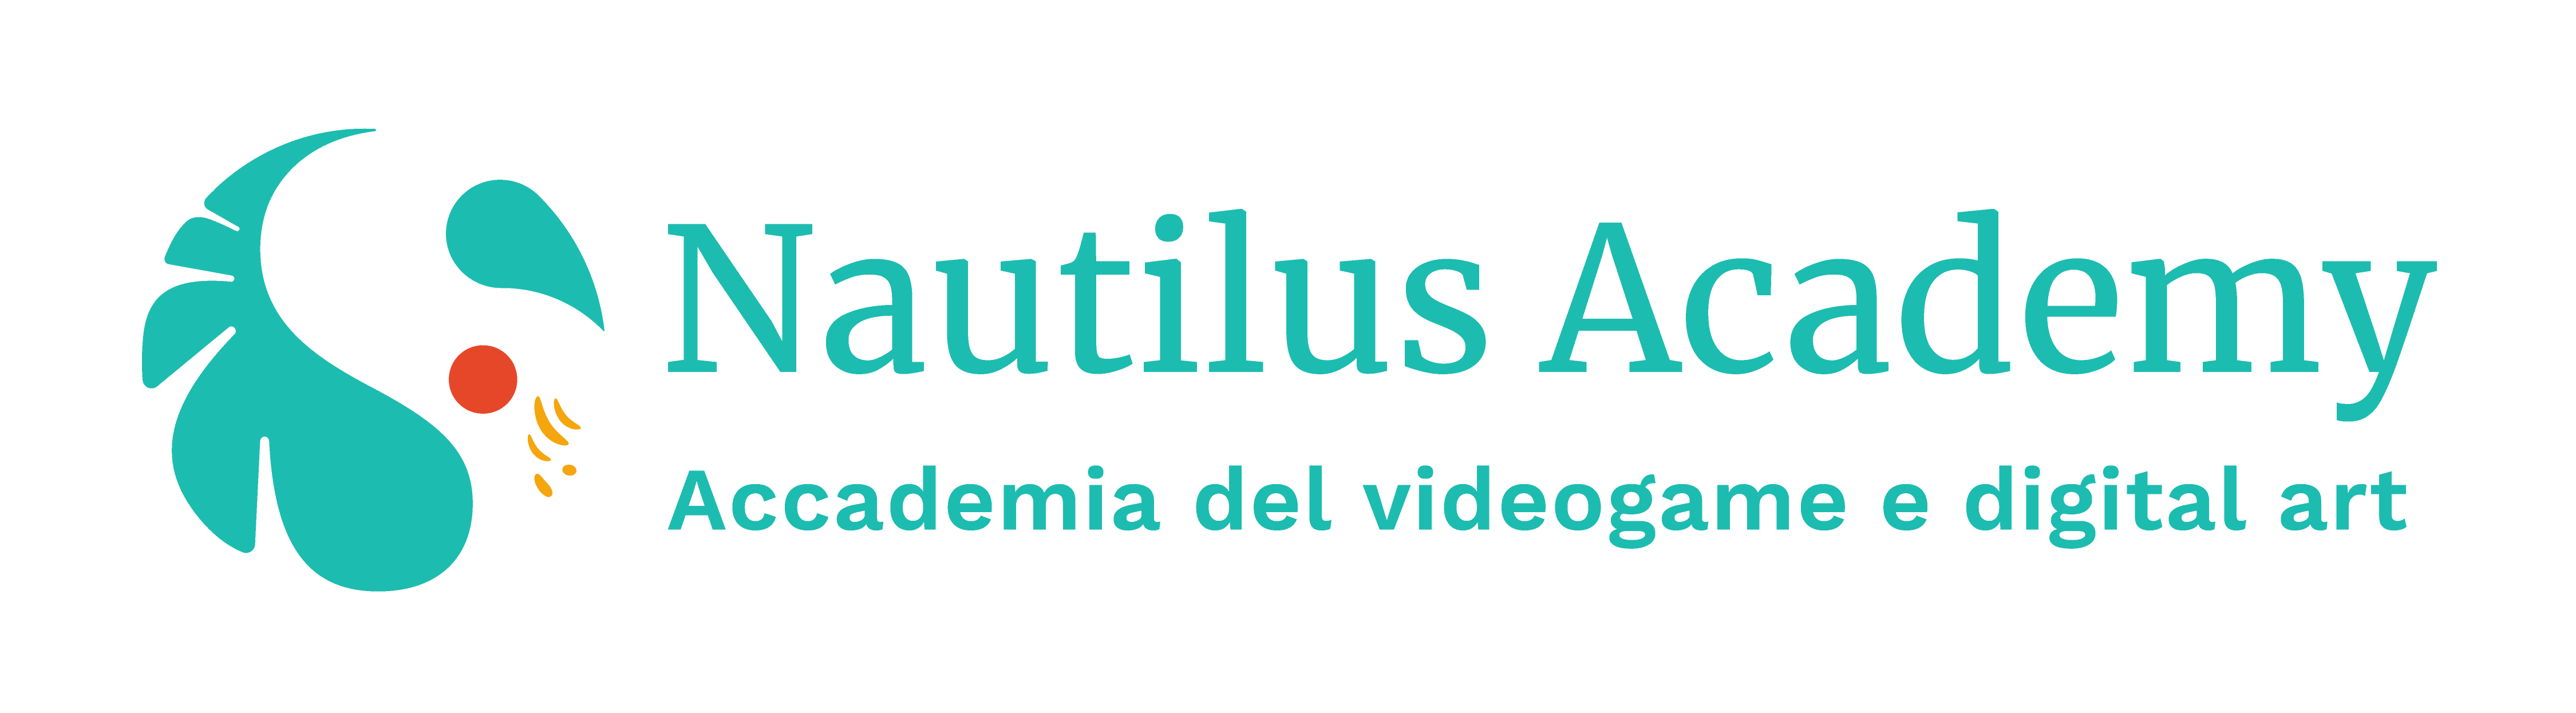 Nautilus Academy Catania